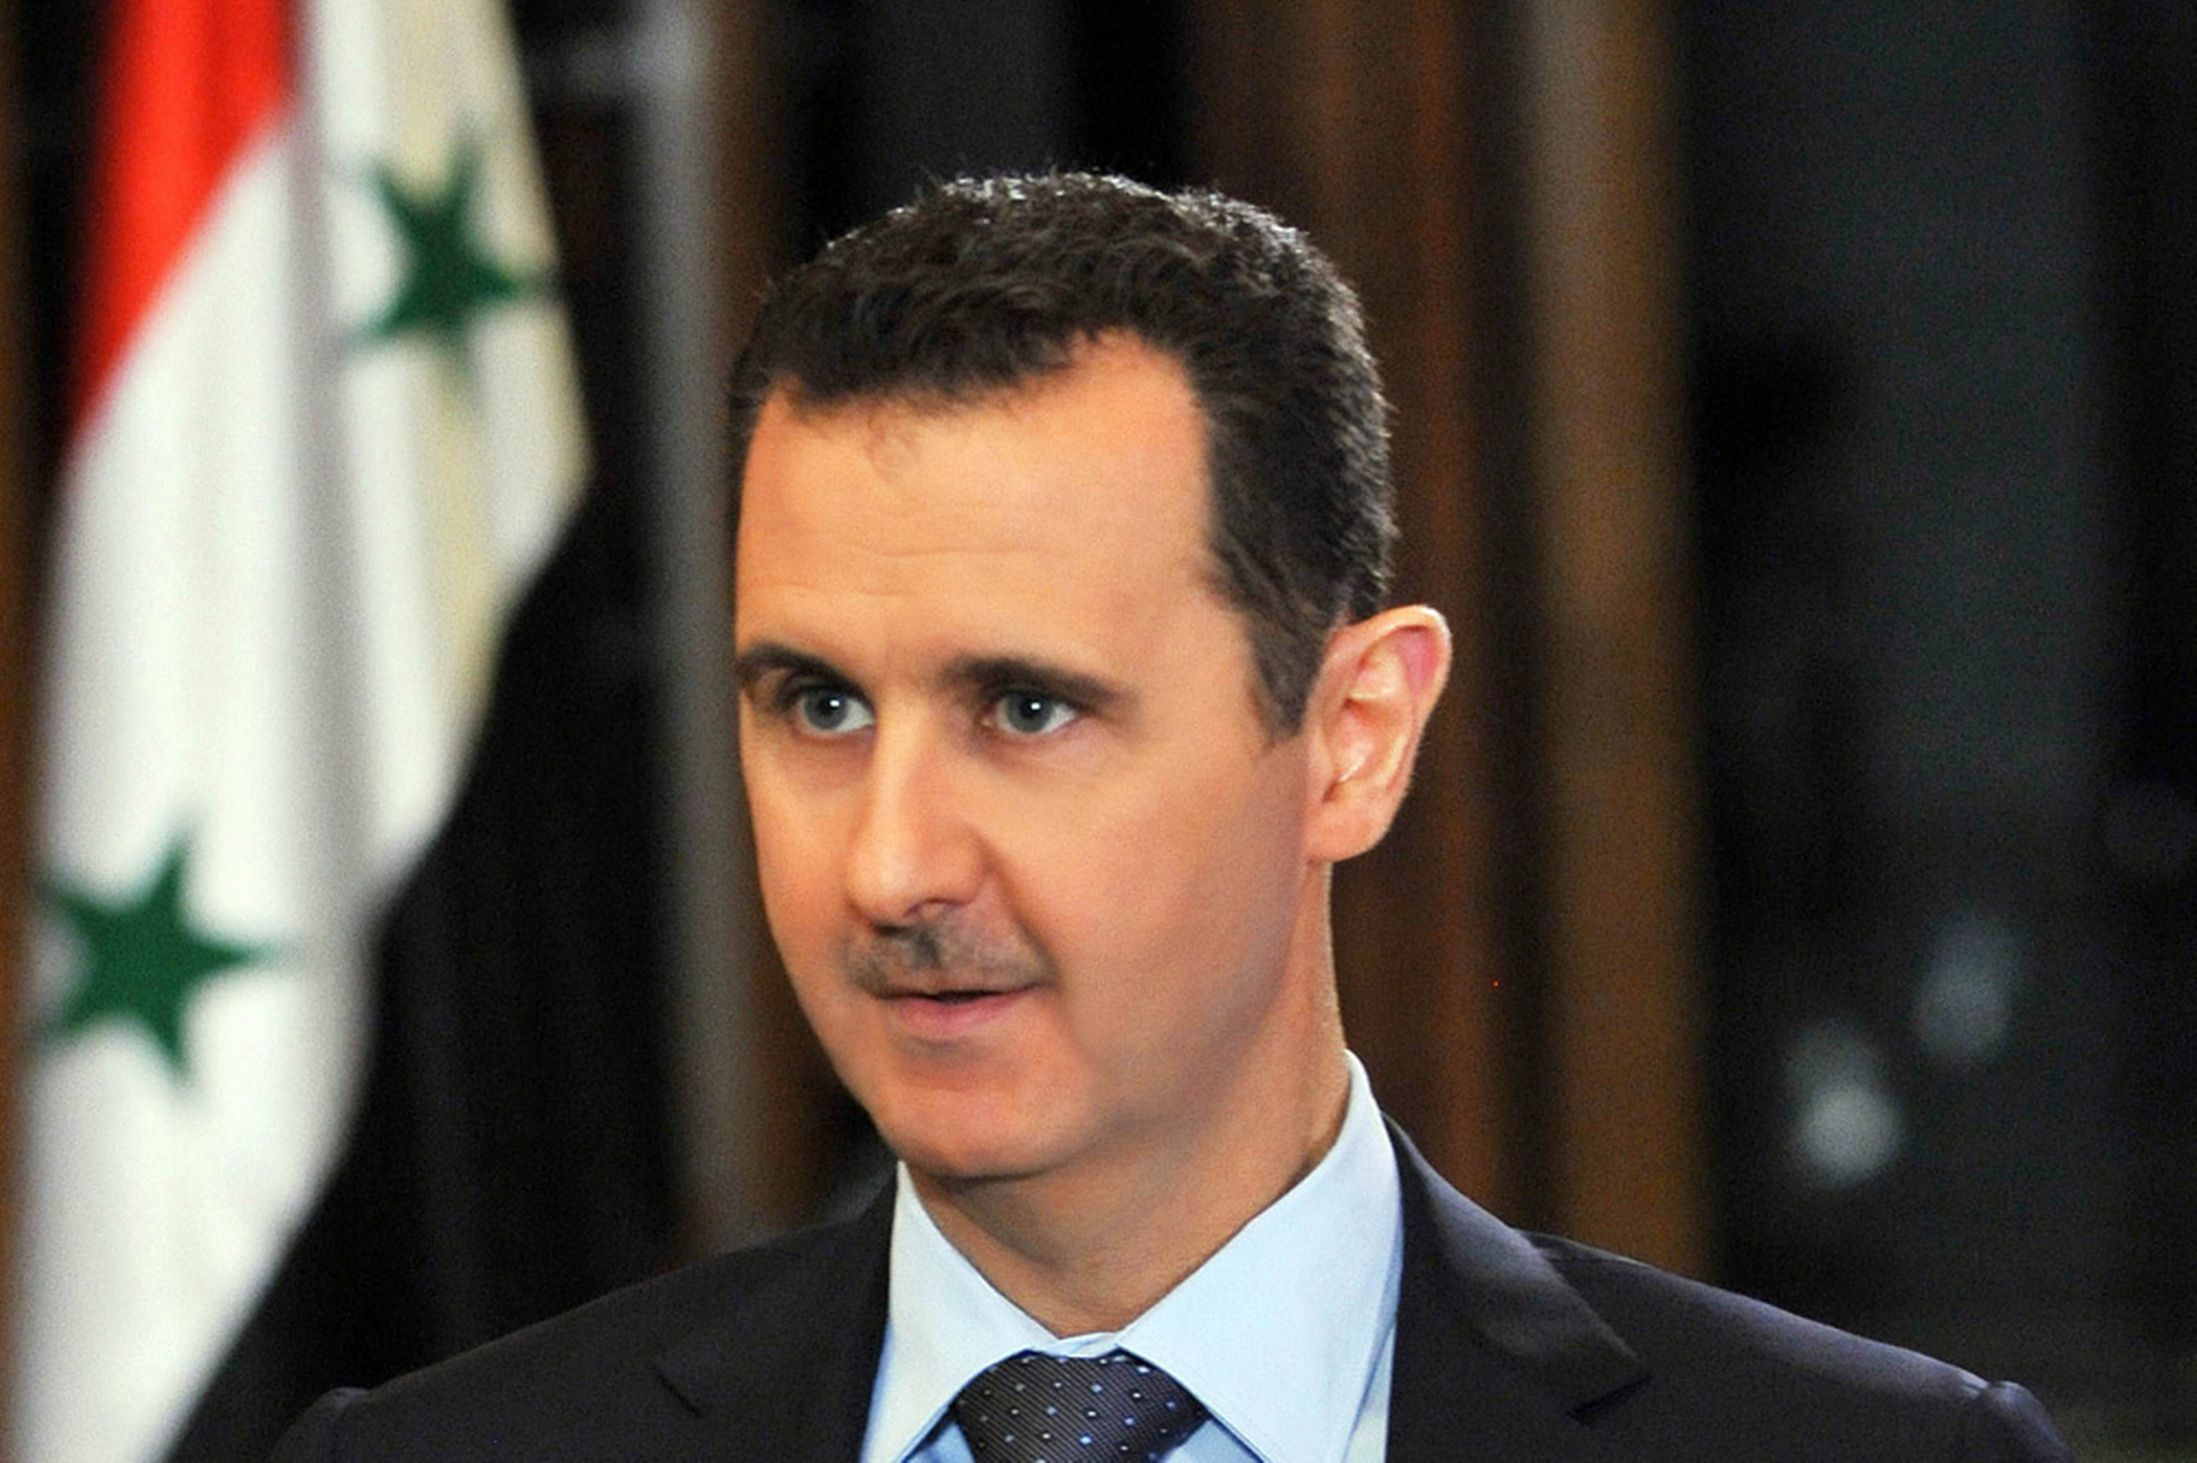 بشار الأسد: “مستعد” للتفاوض حول “كل شيء” حتى منصبي